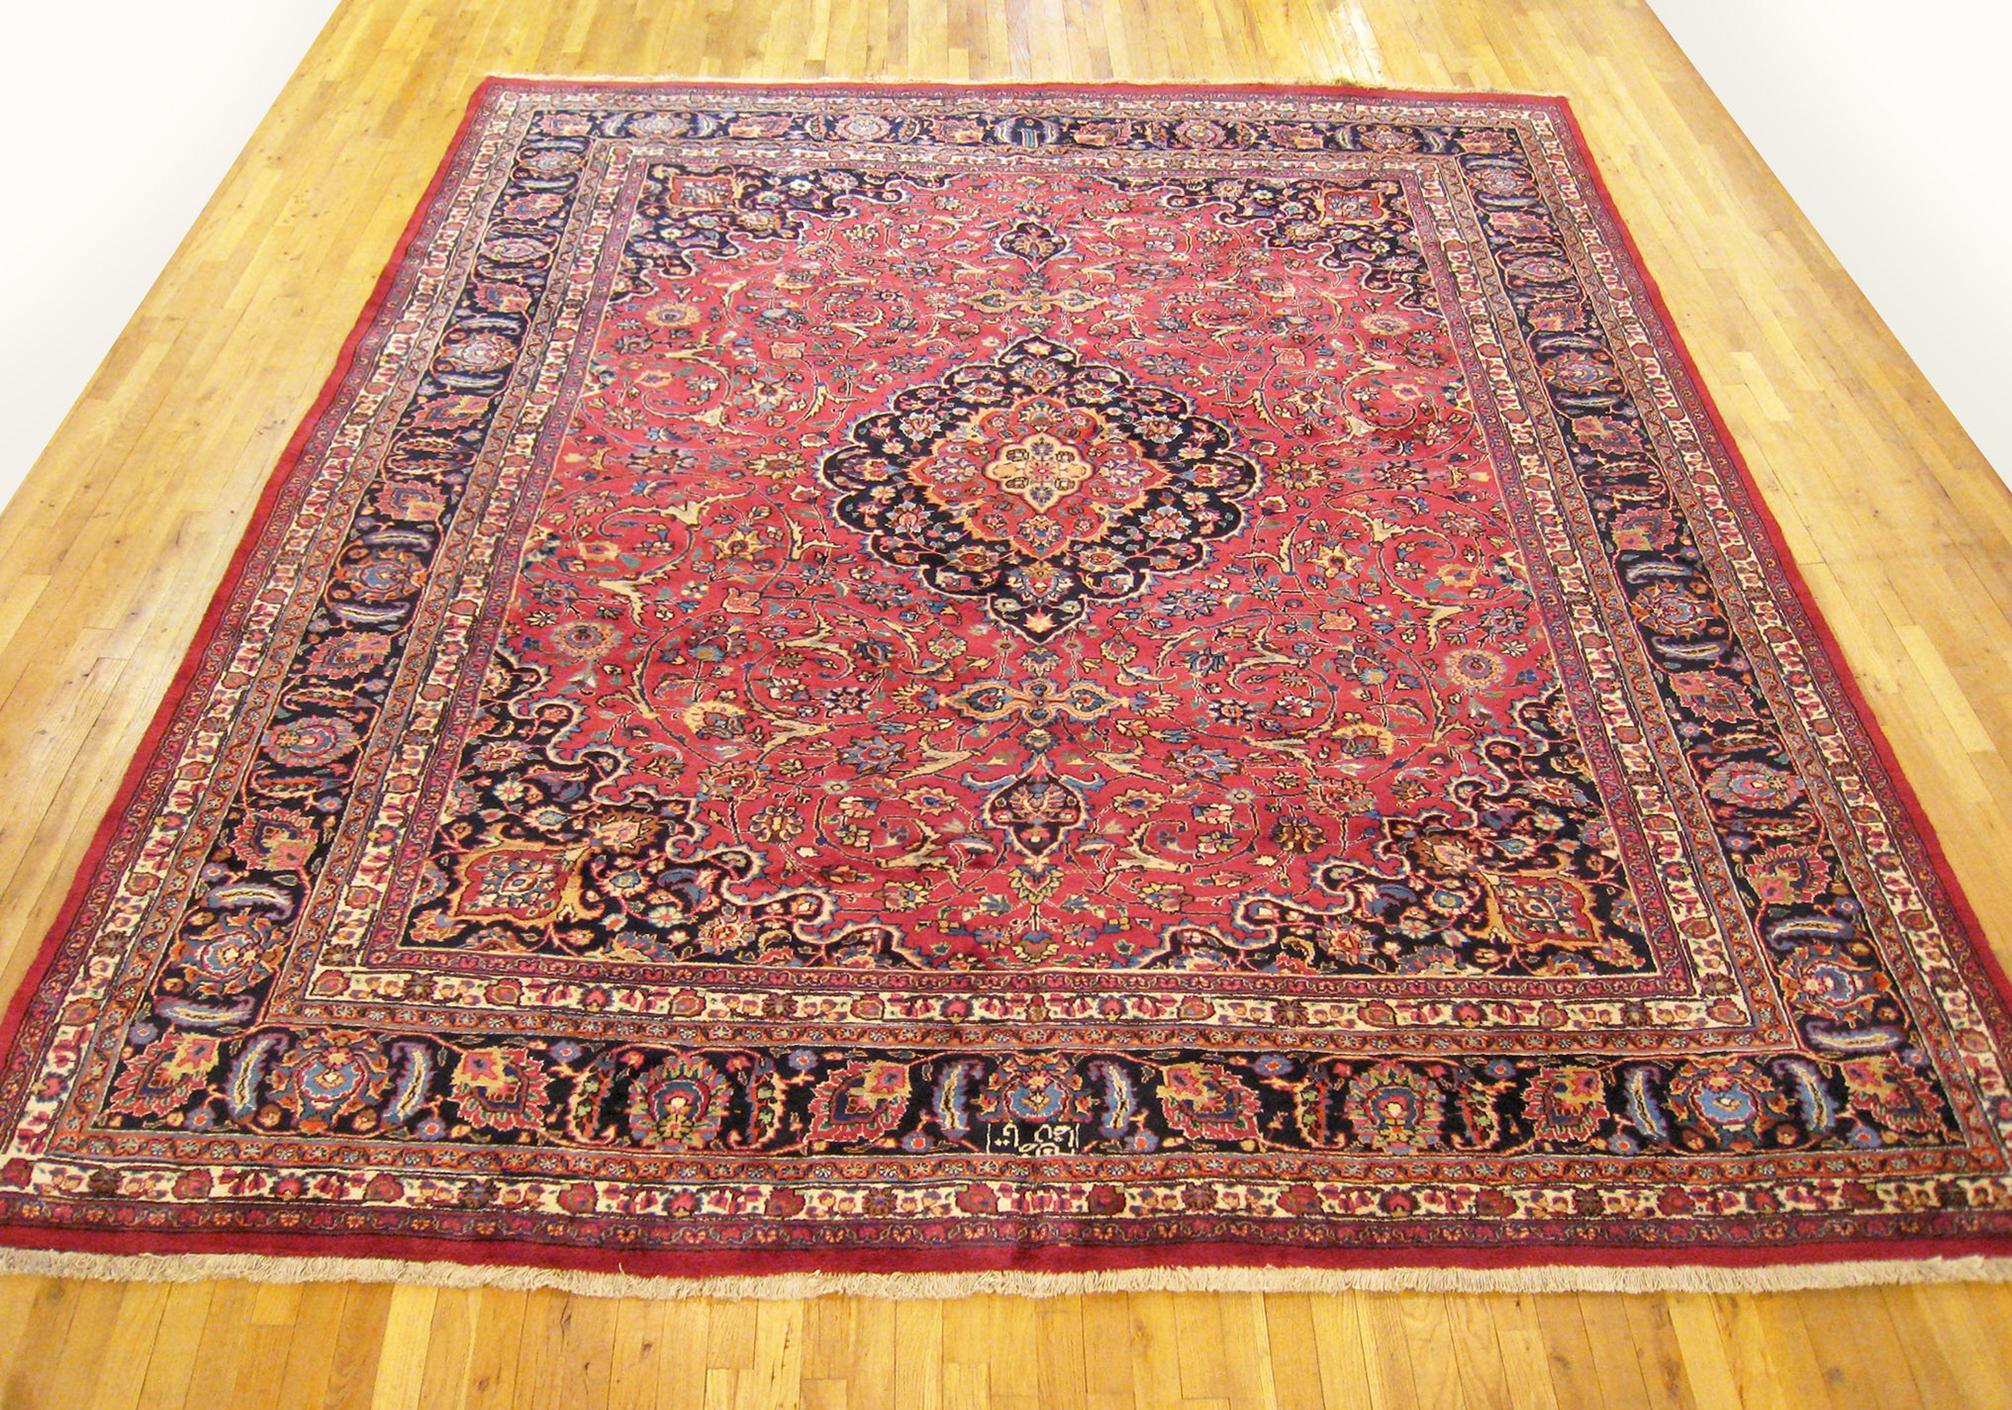 Vintage Persian Mesh Oriental Rug, Raumgröße

Ein Vintage Persisch Mesh orientalischen Teppich, Größe 12'0 x 9'10, um 1940.  Dieser hübsche, handgewebte geometrische Teppich zeigt ein zentrales Medaillon mit floralen Elementen auf dem gesamten roten